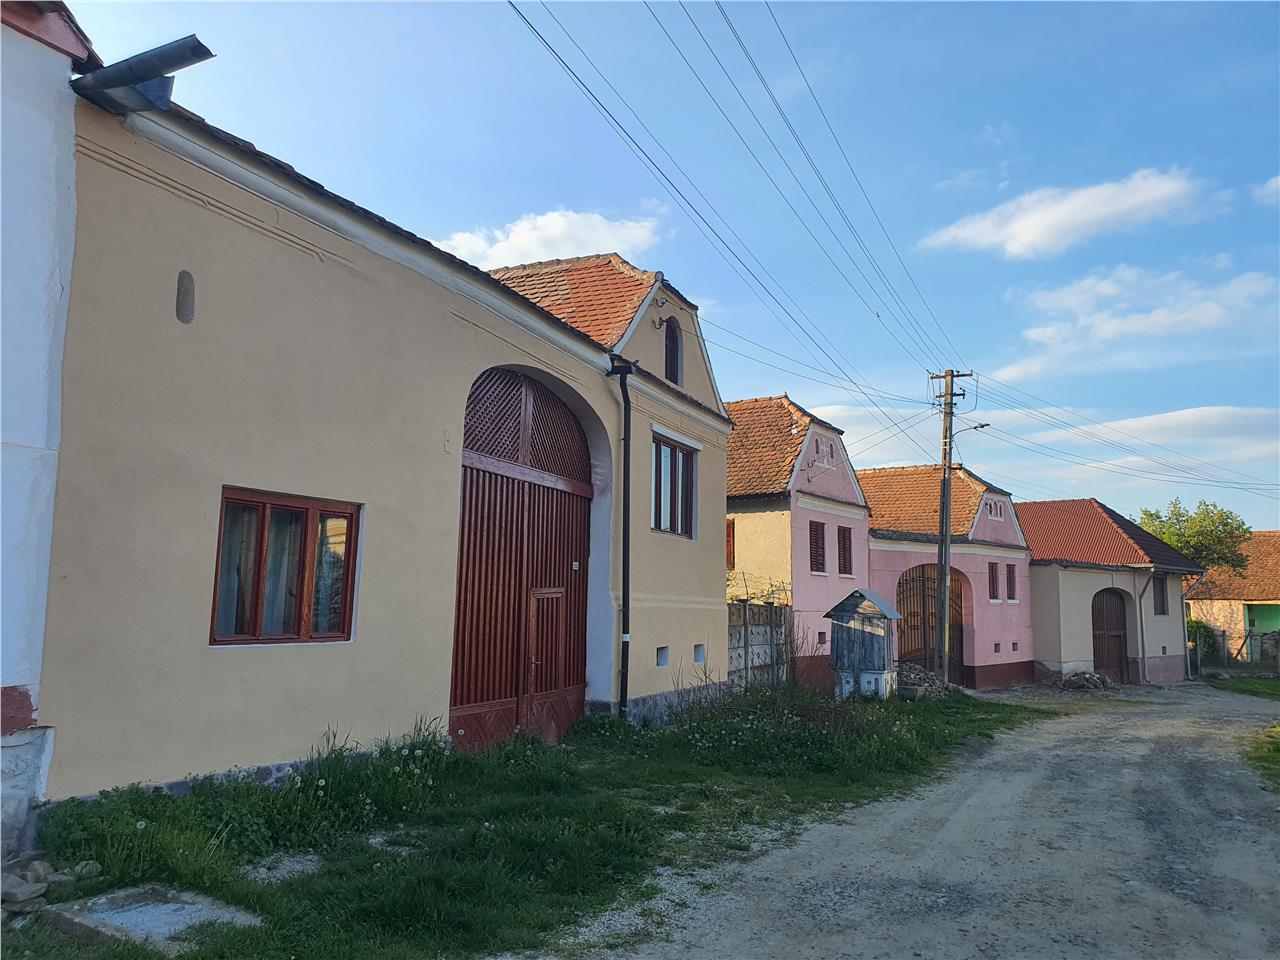 Casa singur in curte cu livada pe rod in Aciliu,1600mp teren total